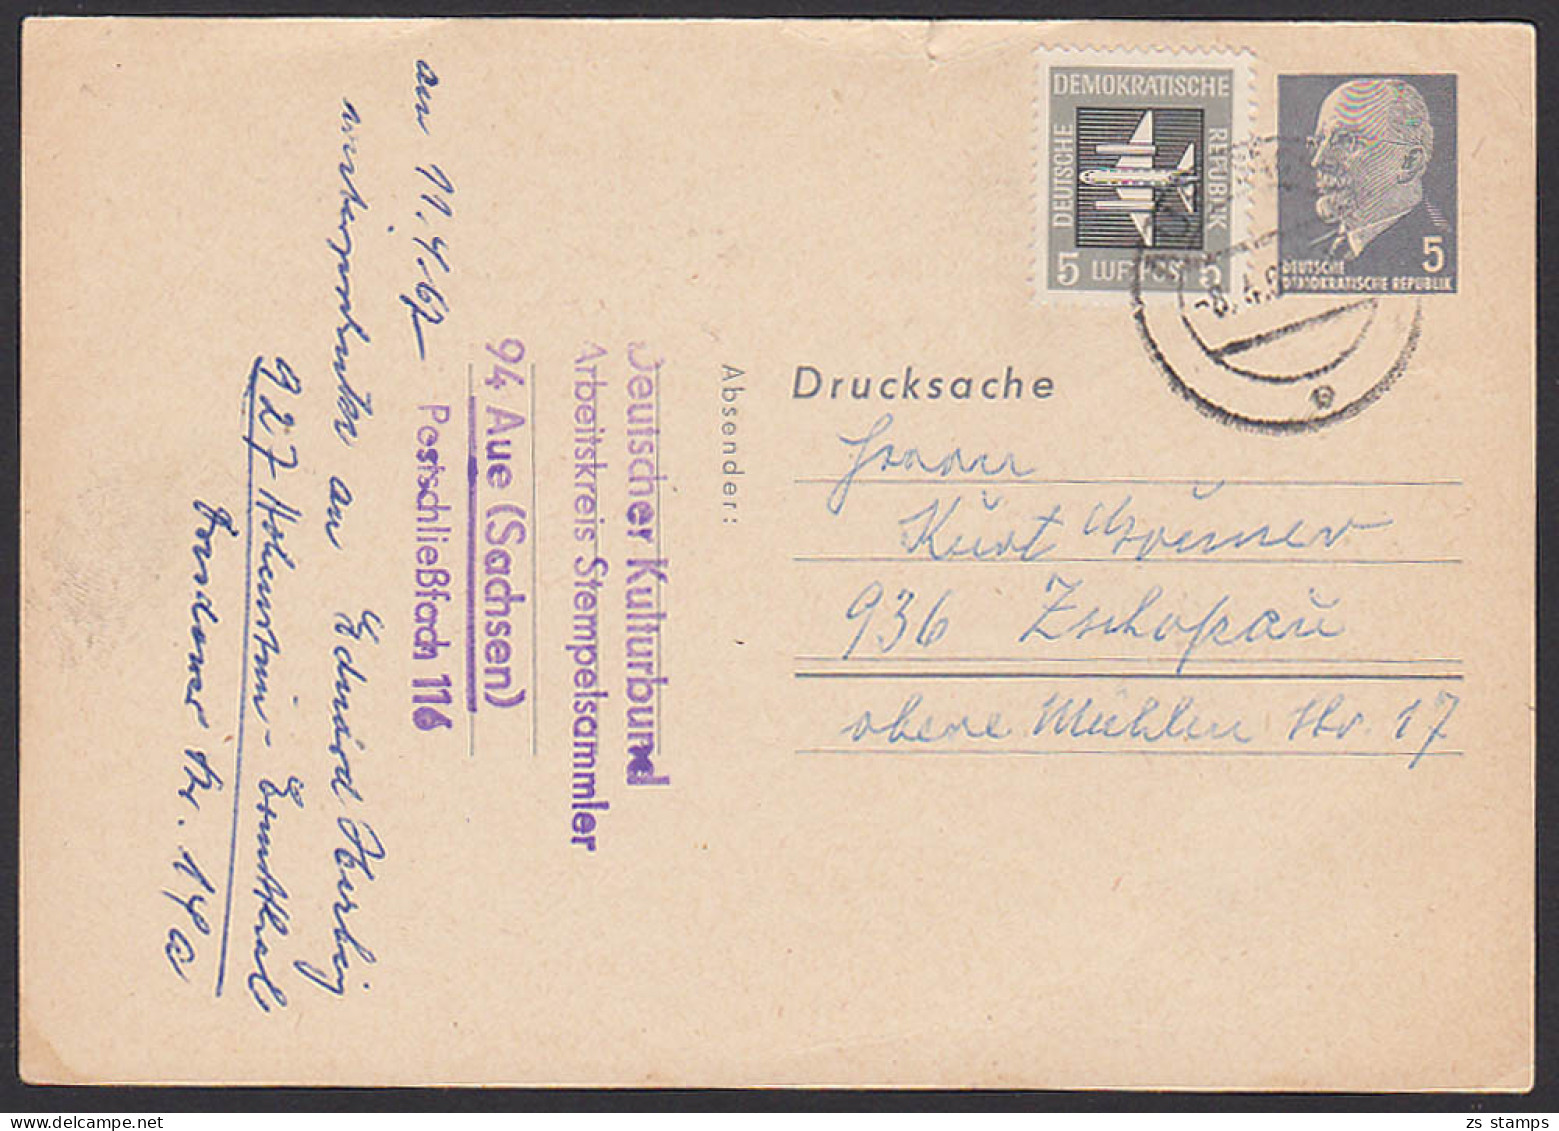 Aue Walter Ulbricht 5 Pf. Ganzsache Mit Zusatzfrankatur Privatganzsache Blanko PP7/1a, 8.4.67 - Postkaarten - Gebruikt